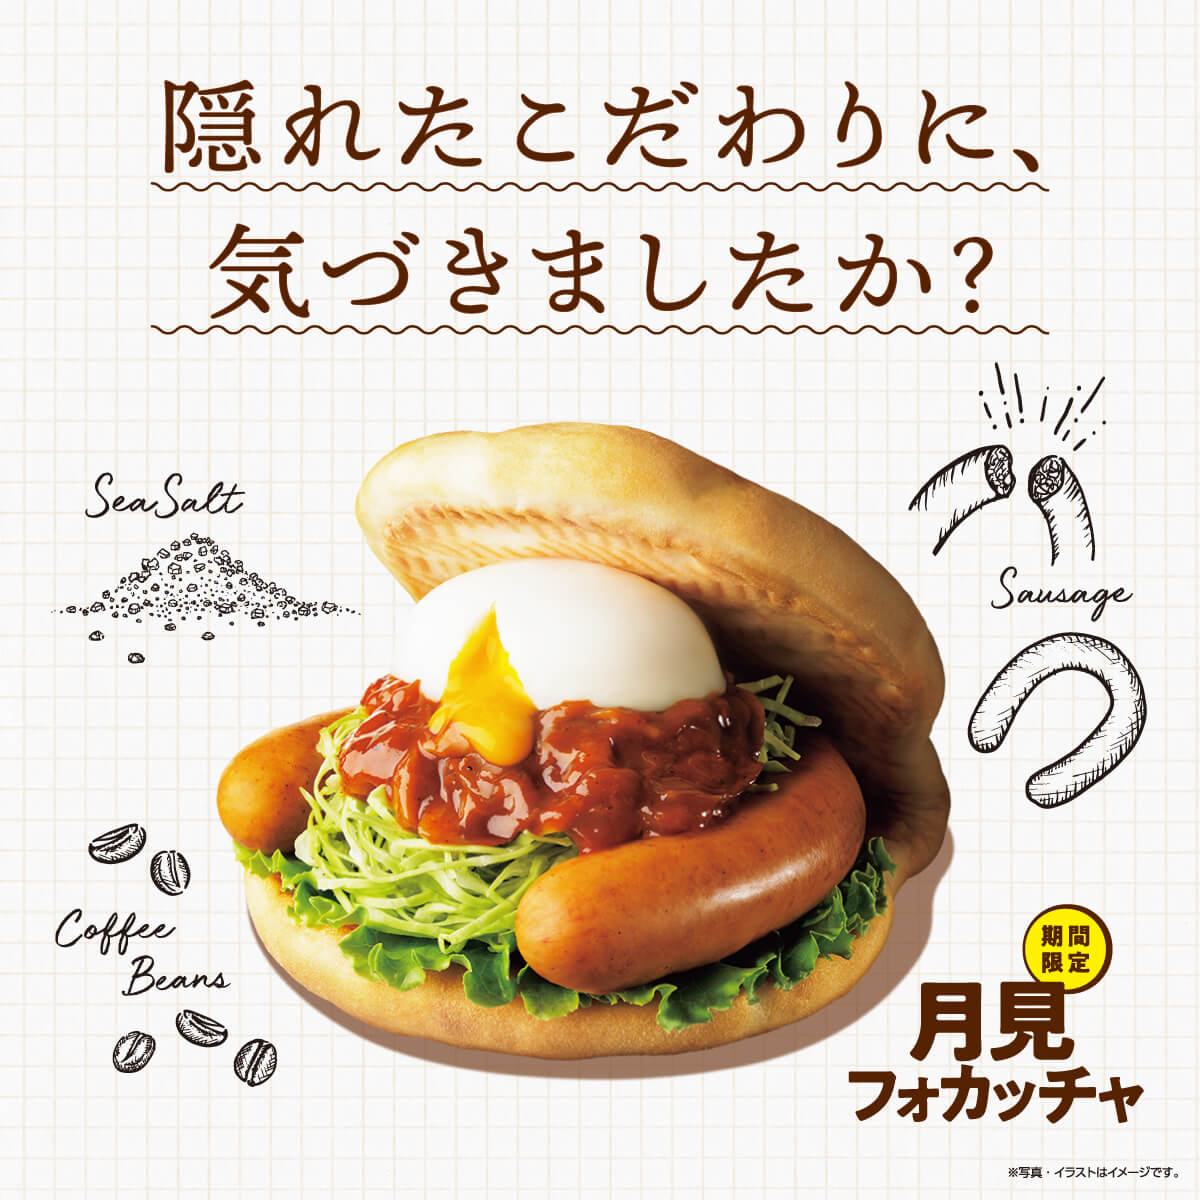 飲料 / 食品 自然 / 清新 咖啡店風格 插圖 性感 剪貼Banner設計